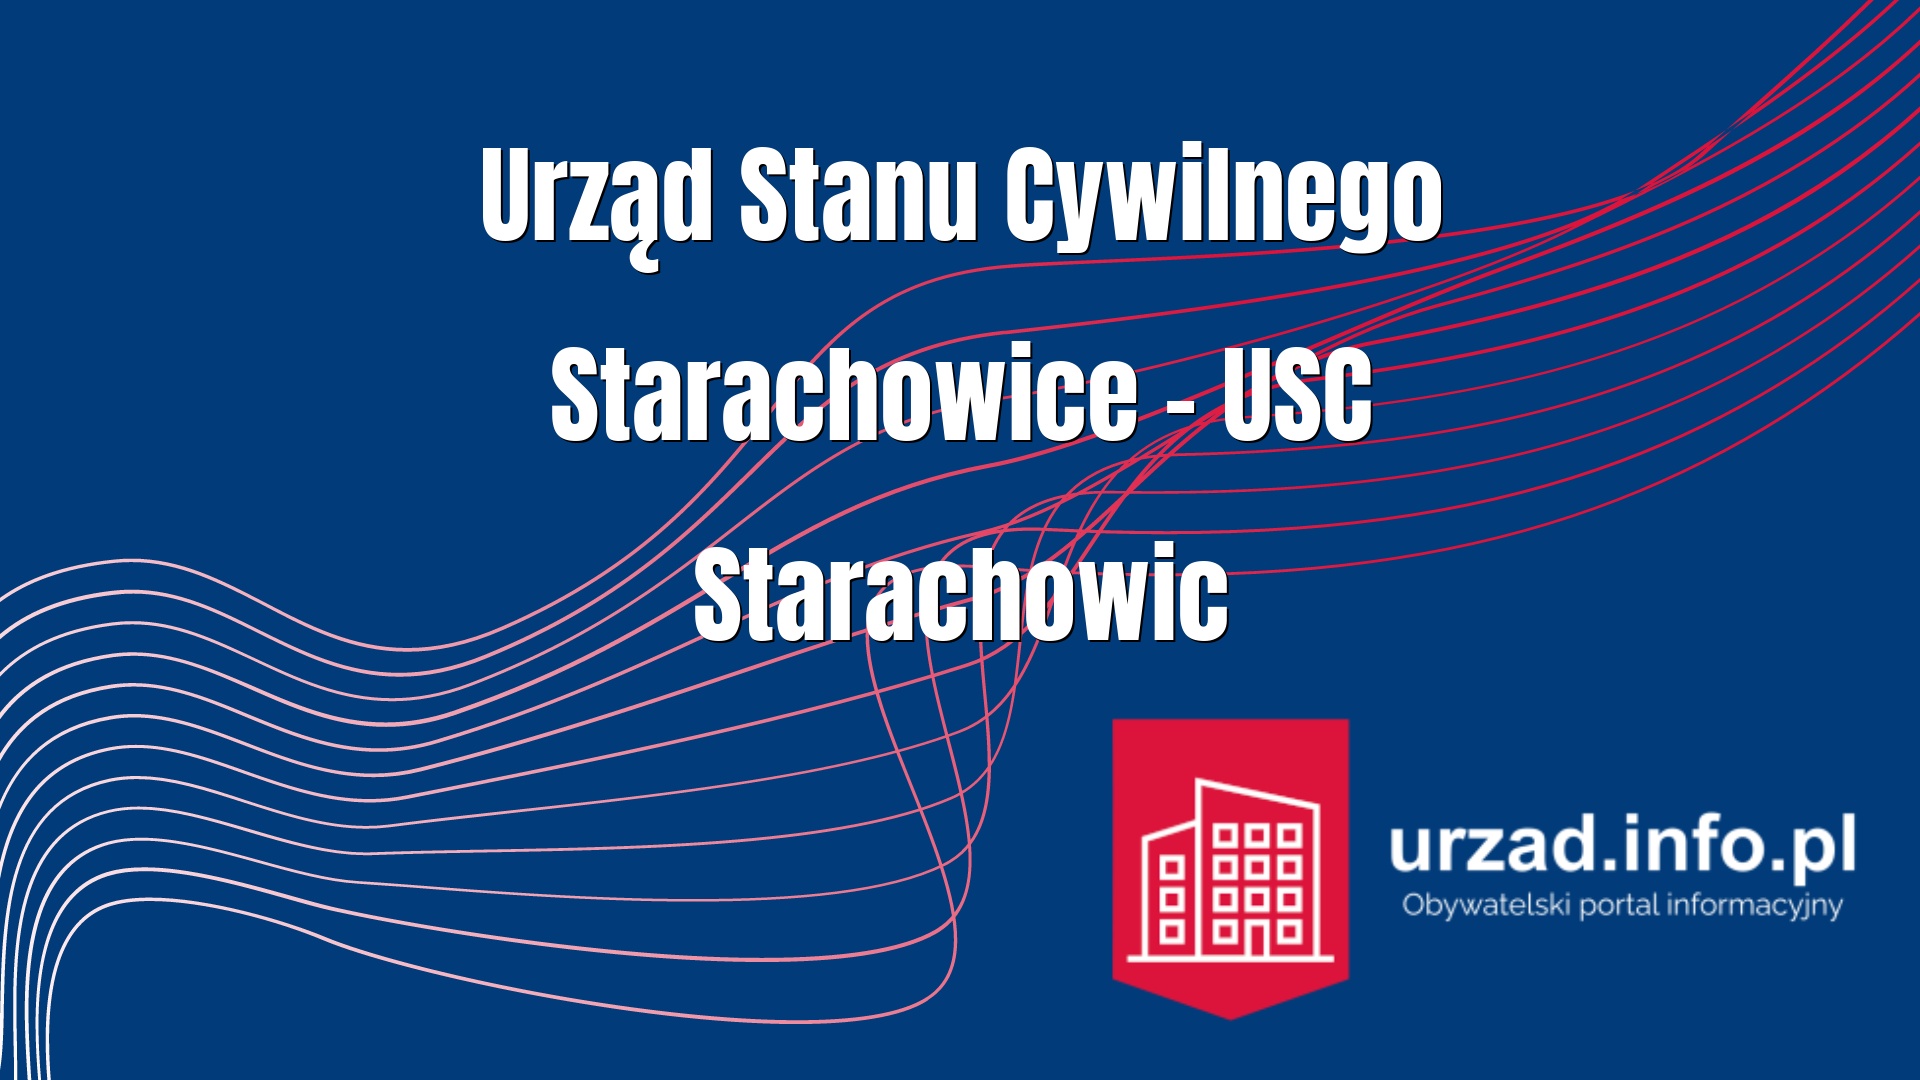 Urząd Stanu Cywilnego Starachowice – USC Starachowic